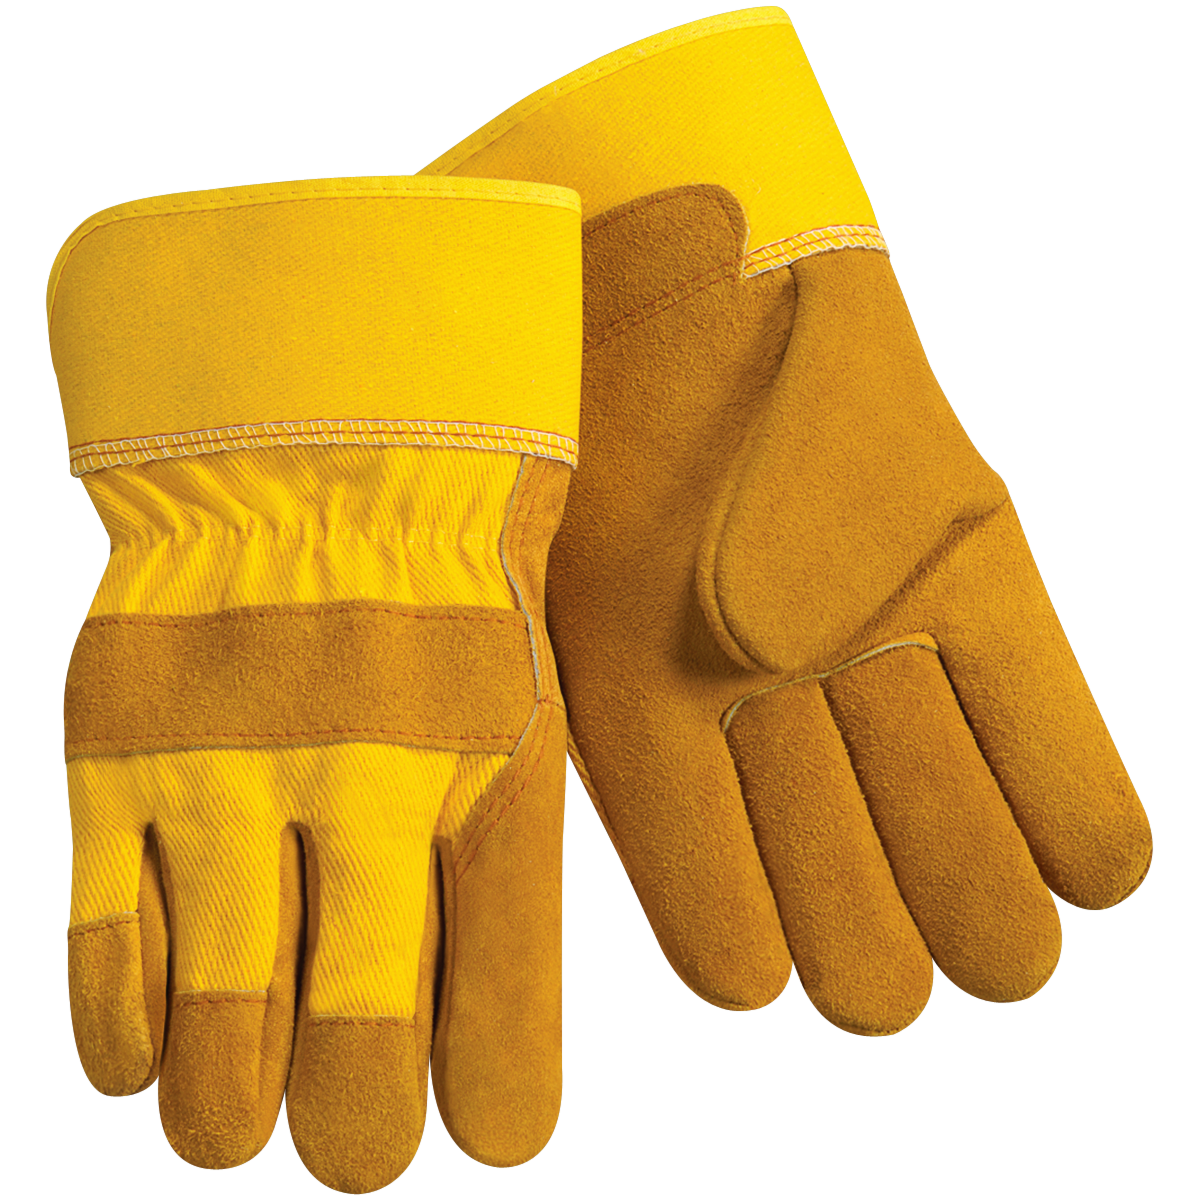 Work Gloves Transparent PNG